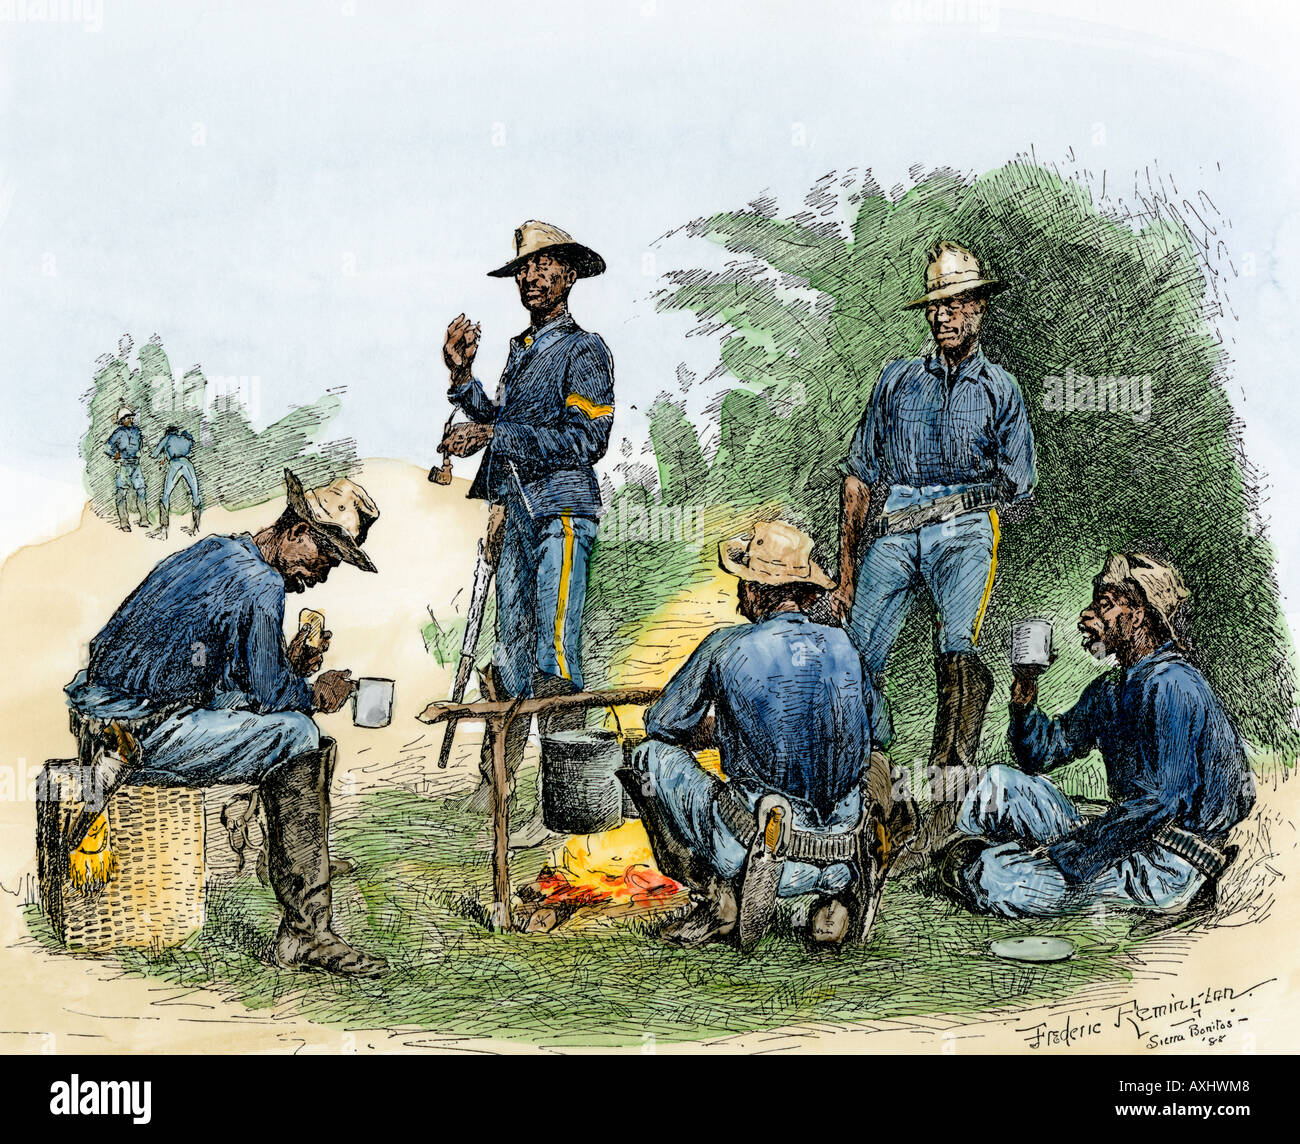 Les troupes afro-américain connu sous le nom de soldats Buffalo autour d'un feu de camp dans l'Ouest, années 1800. À la main, gravure sur bois, d'une illustration Frederic Remington Banque D'Images